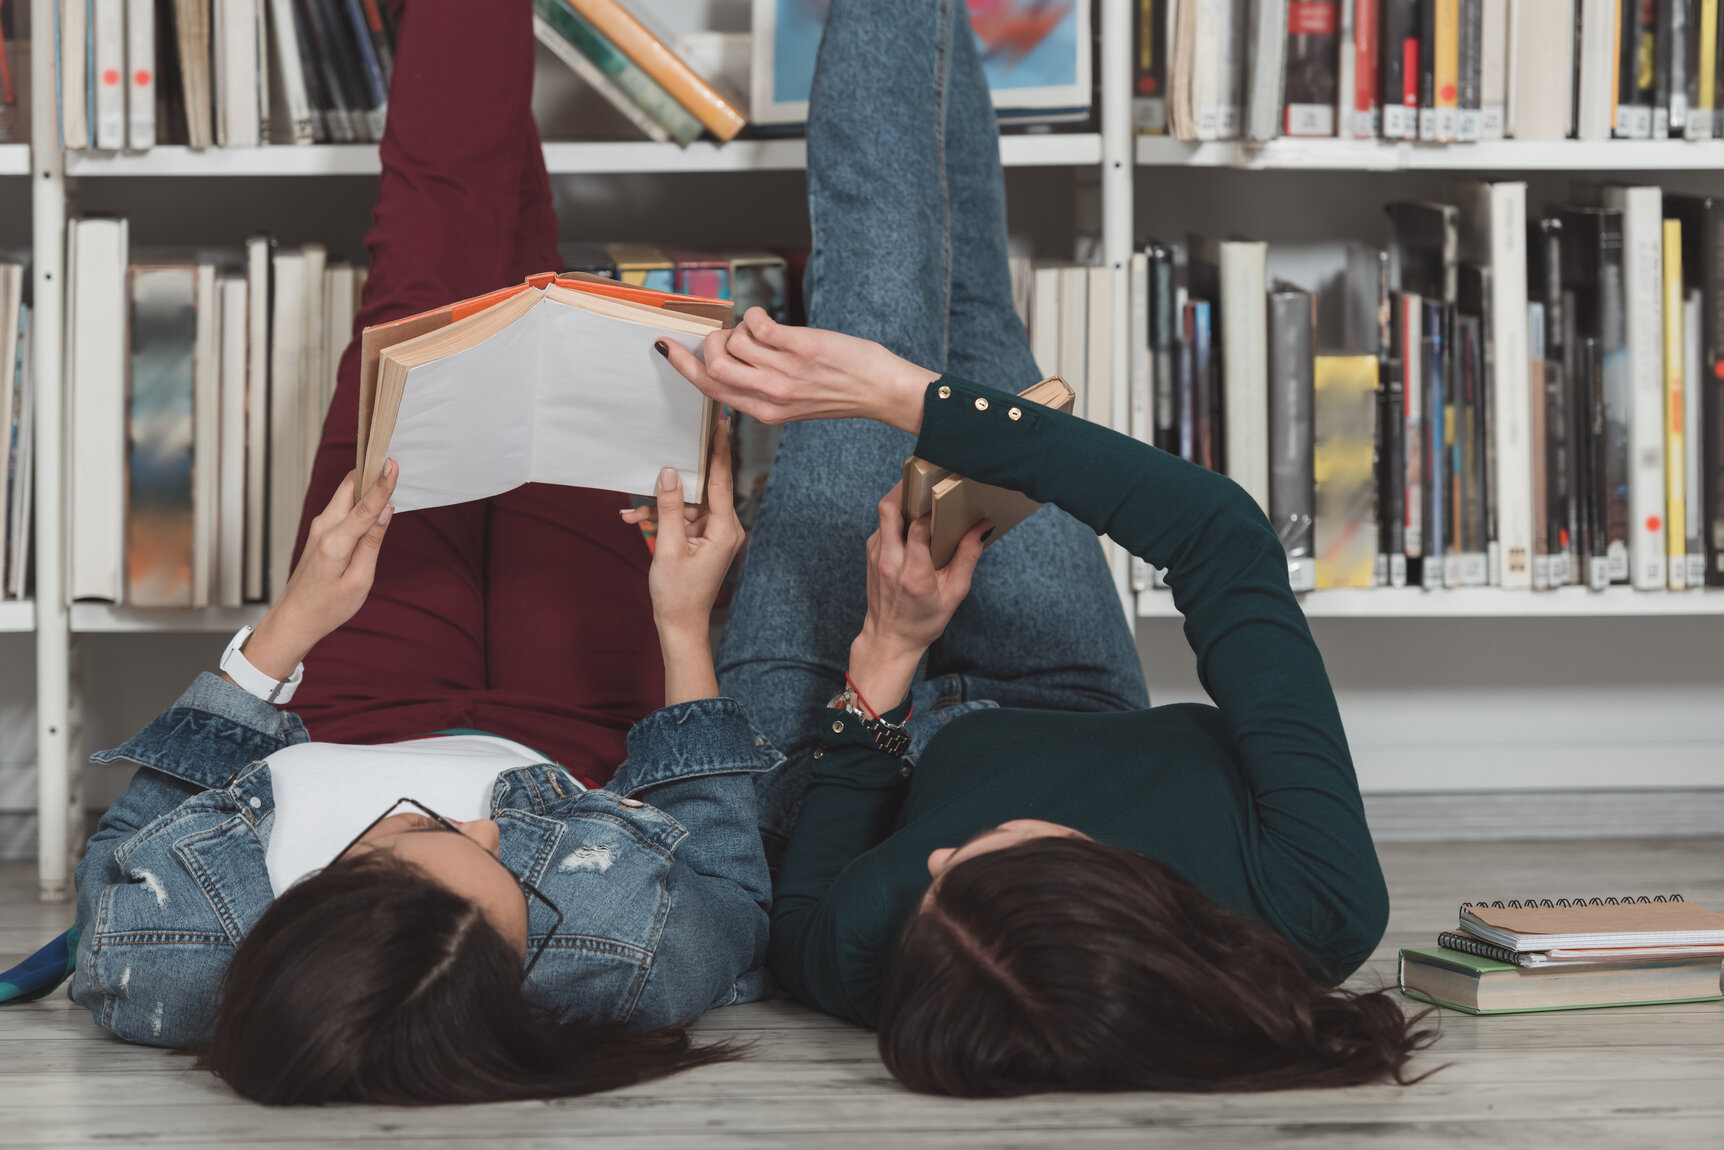 Imagebild: Zwei Personen liegen auf dem Boden, die Beine an ein Bücherregal gelehnt und lesen.